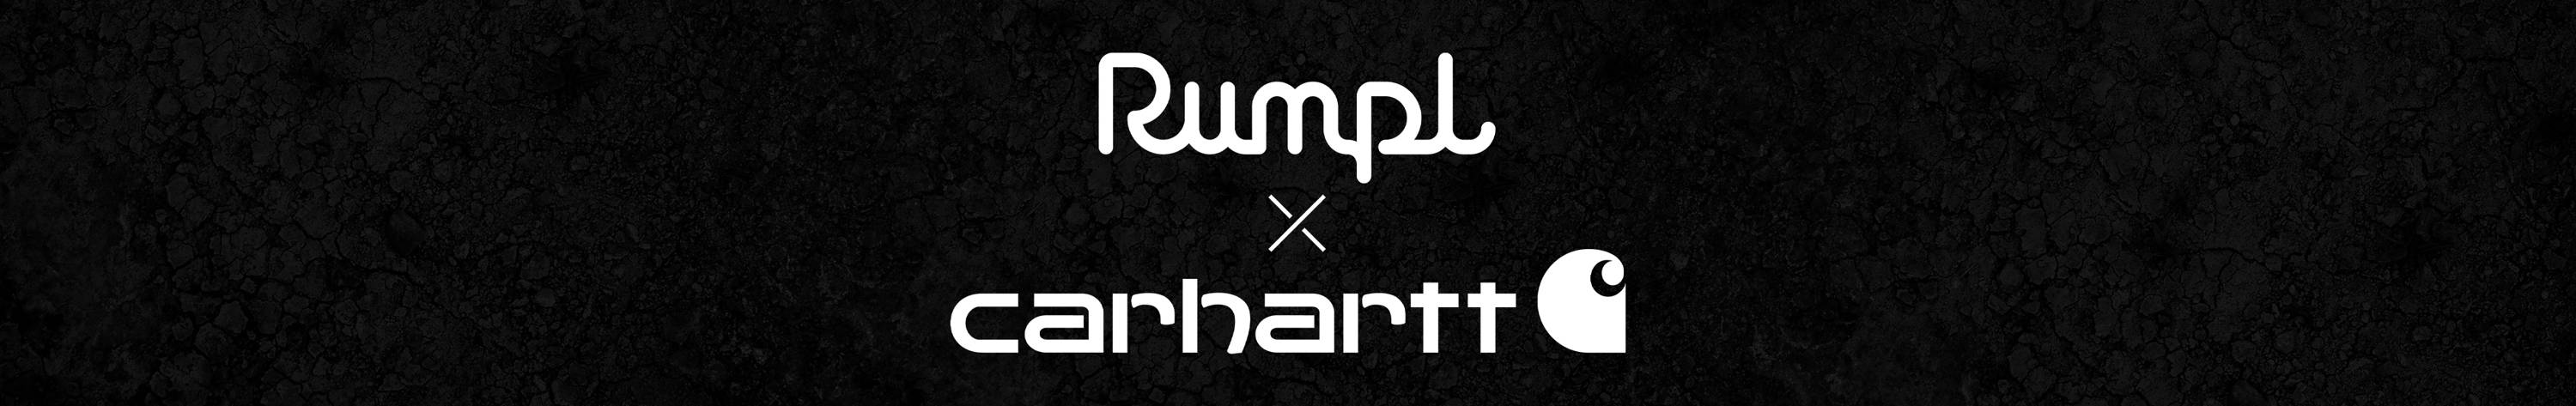 Rumpl x Carhartt logo lockup